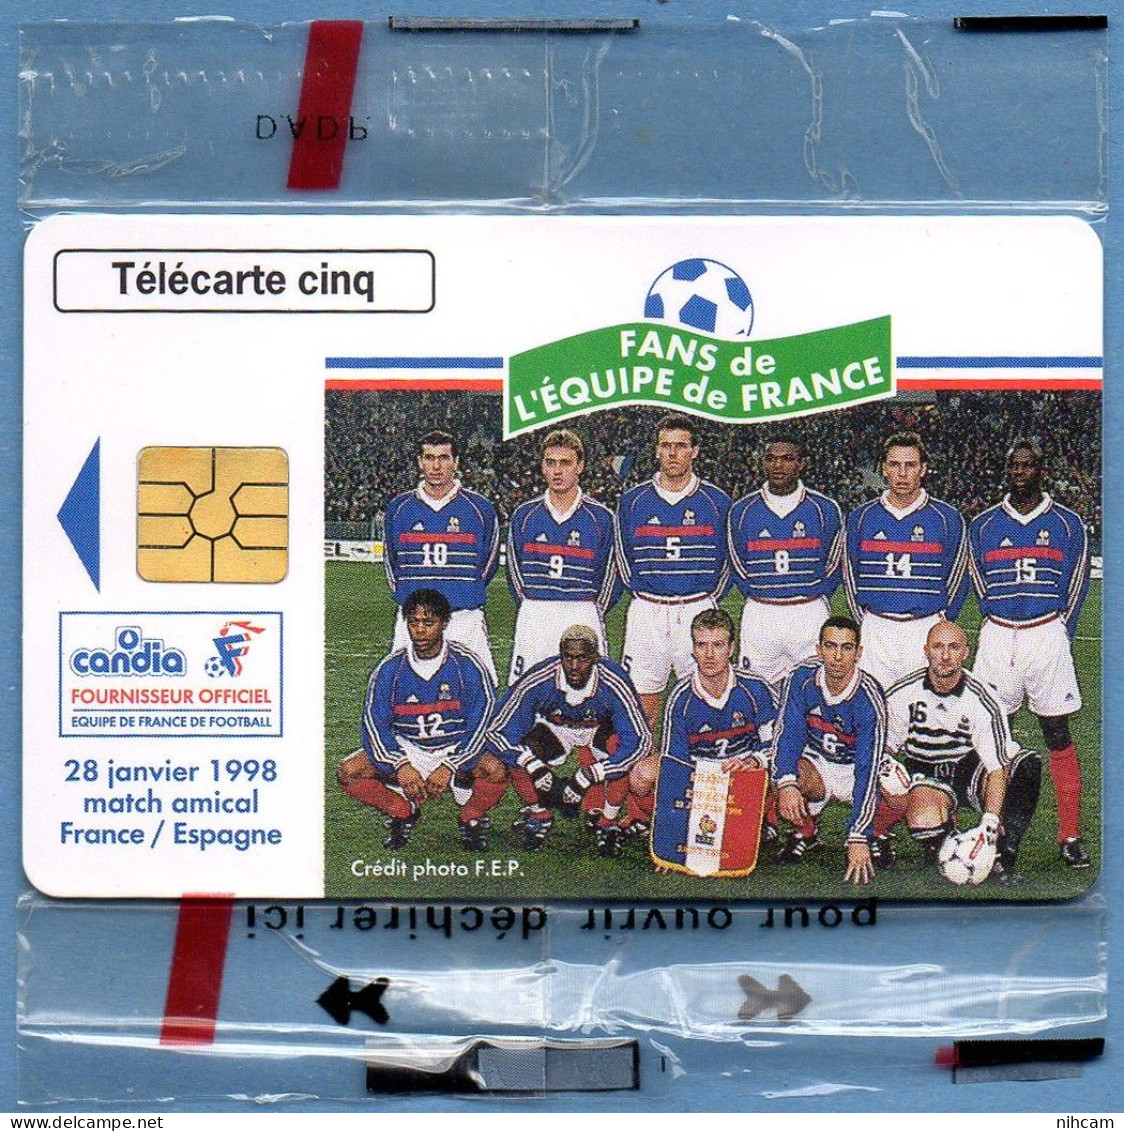 Télécarte France 5 U NSB Candia Equipe De France Football T2G 03/98 6500 Ex. Zidane Deschamps Bartez Thuram.... - 5 Units